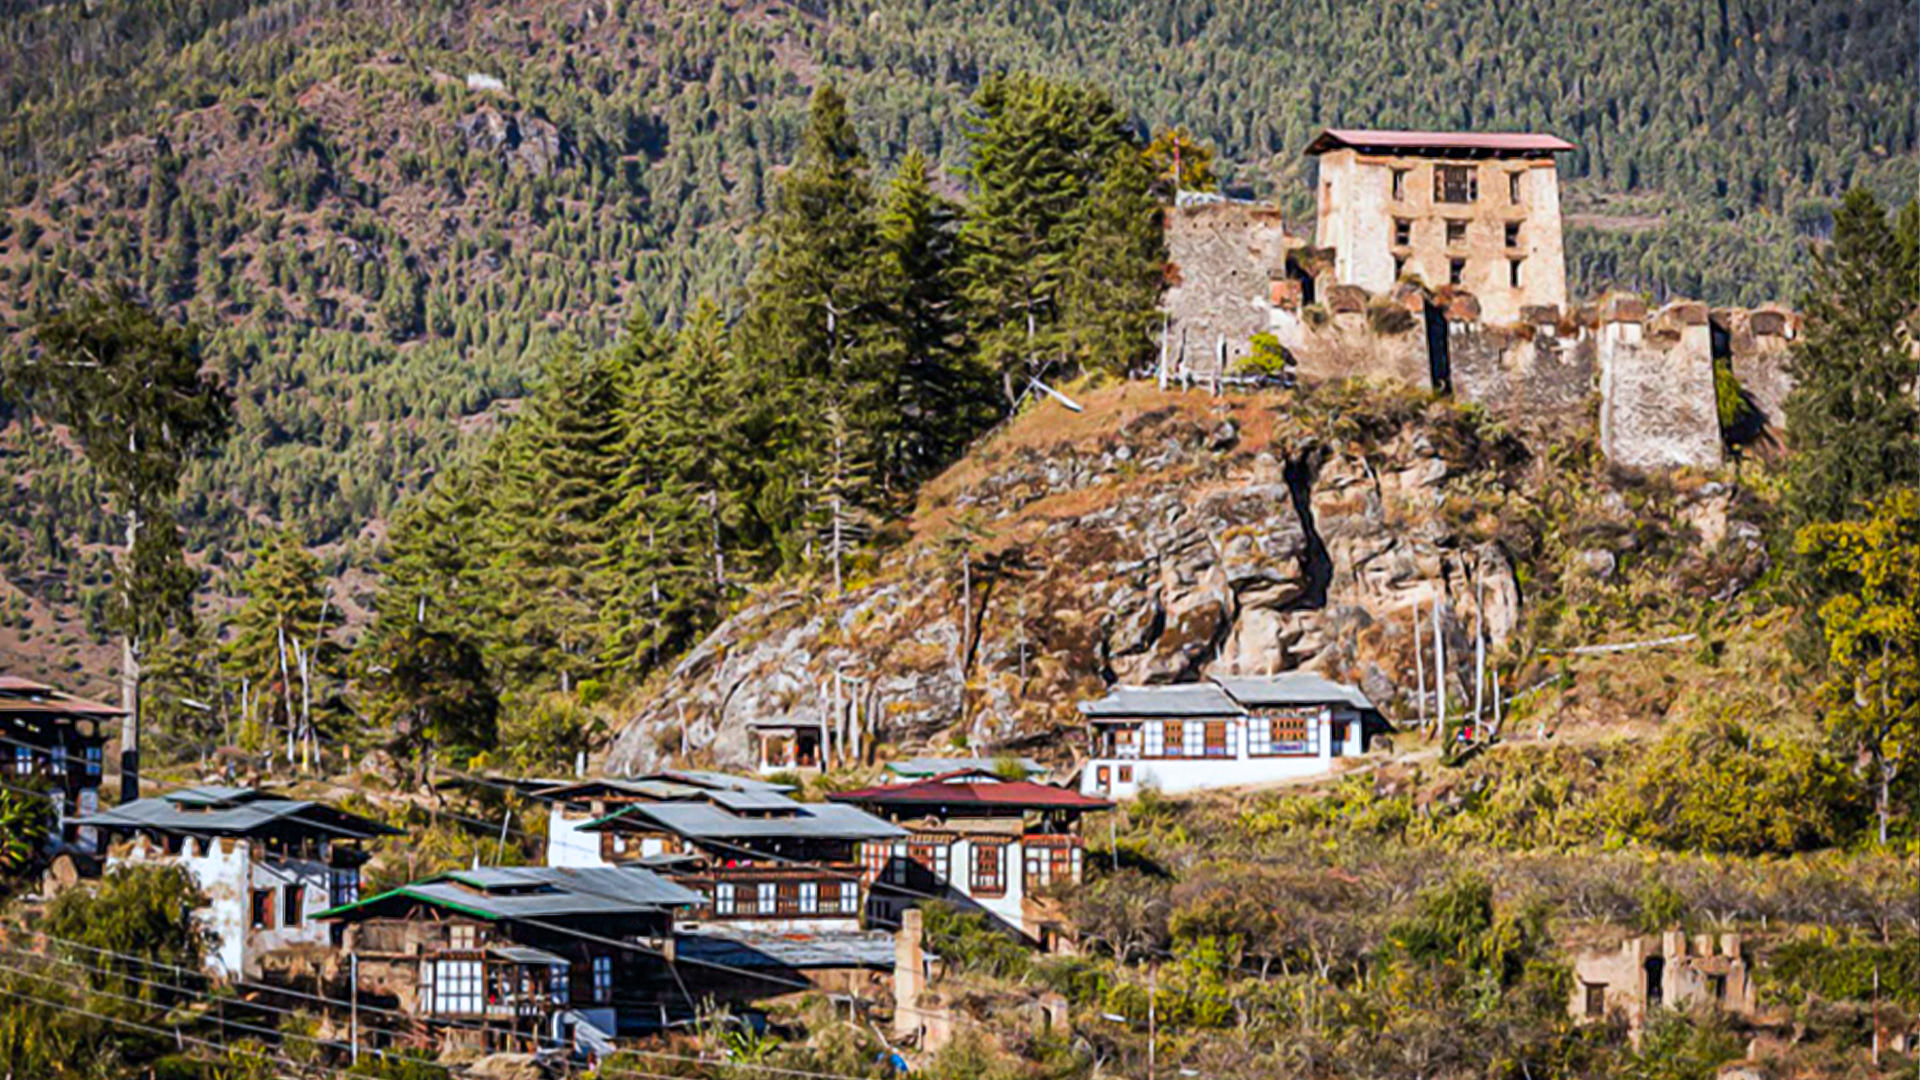 Drukgyel Dzong, Paro